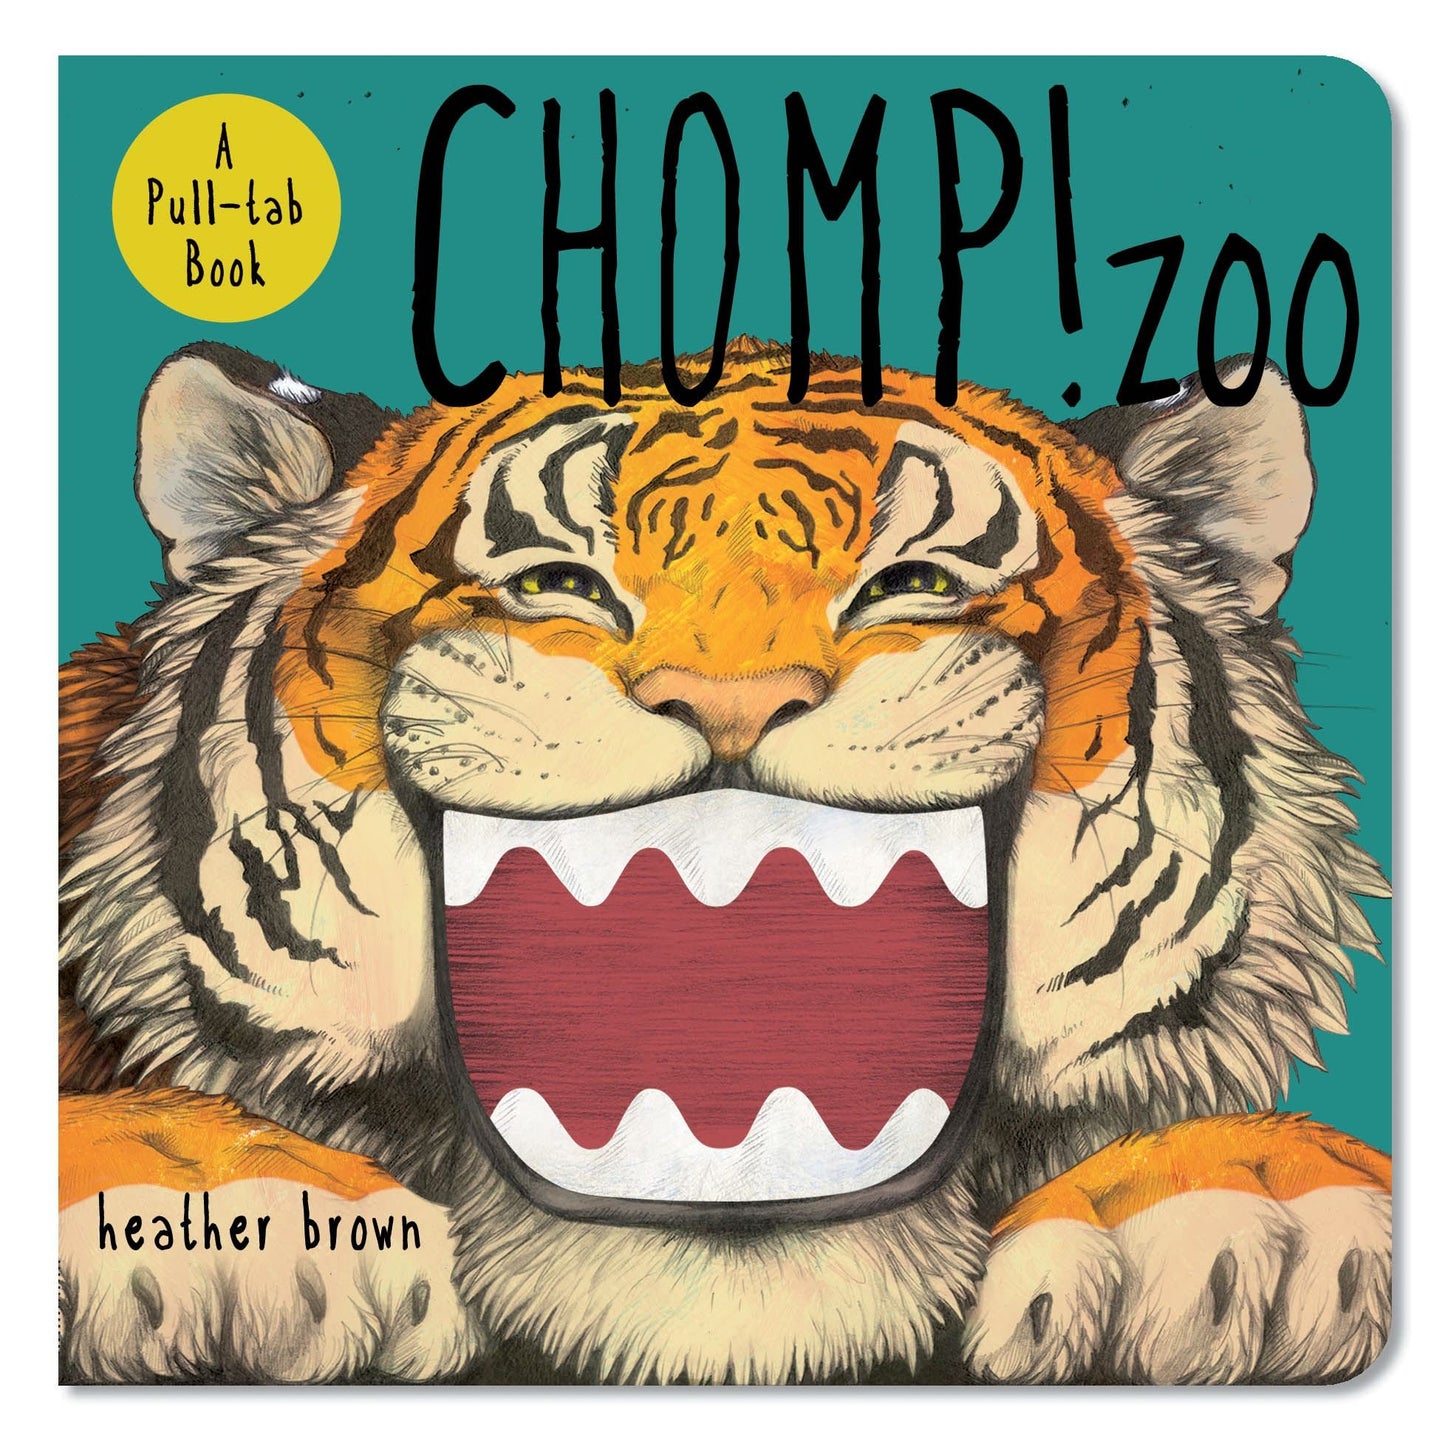 Book (Board) - Chomp! Zoo